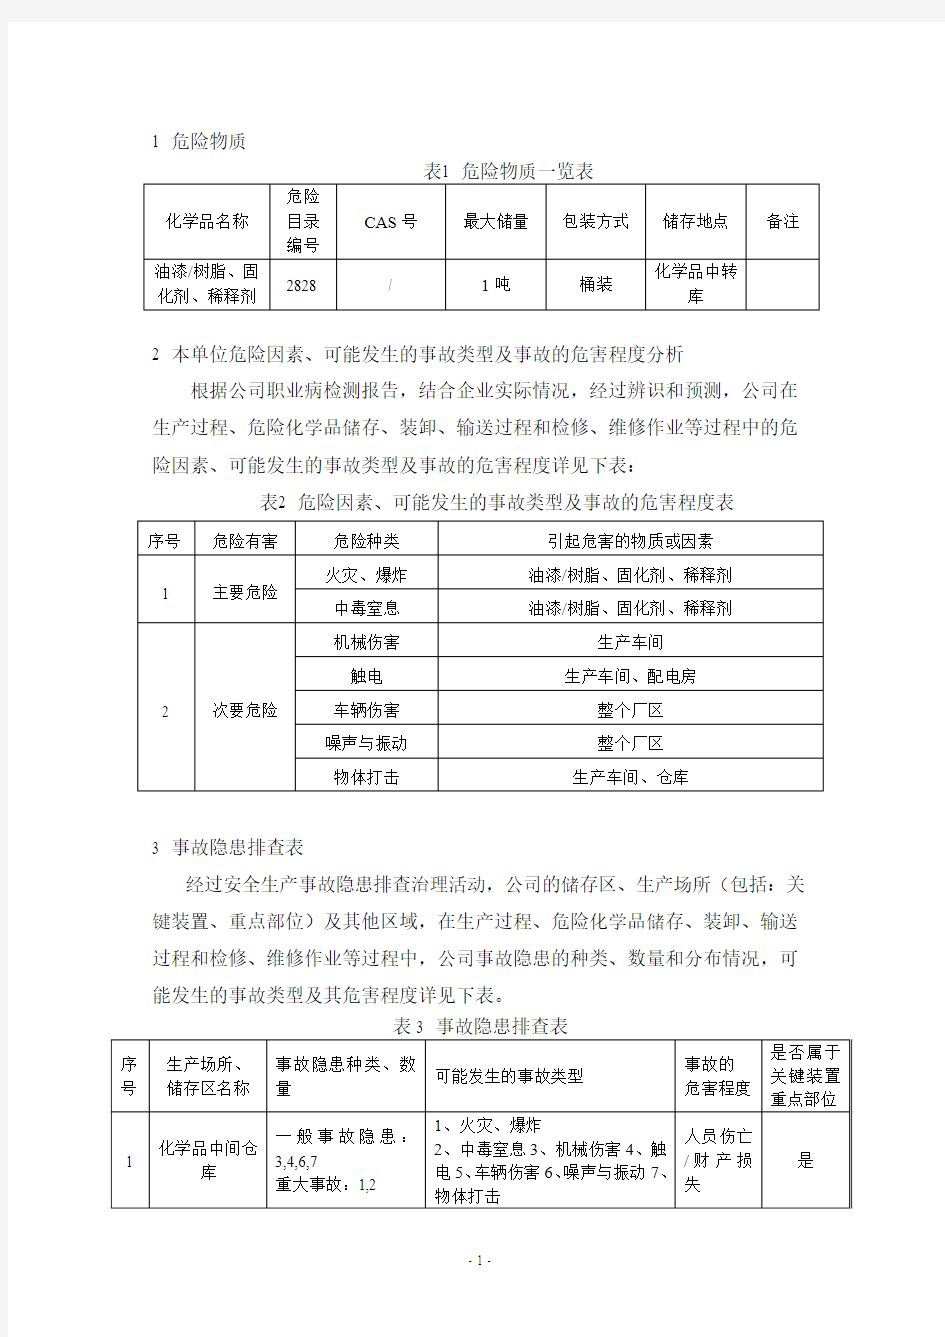 02. 杭州建盛机电有限公司风险分析报告